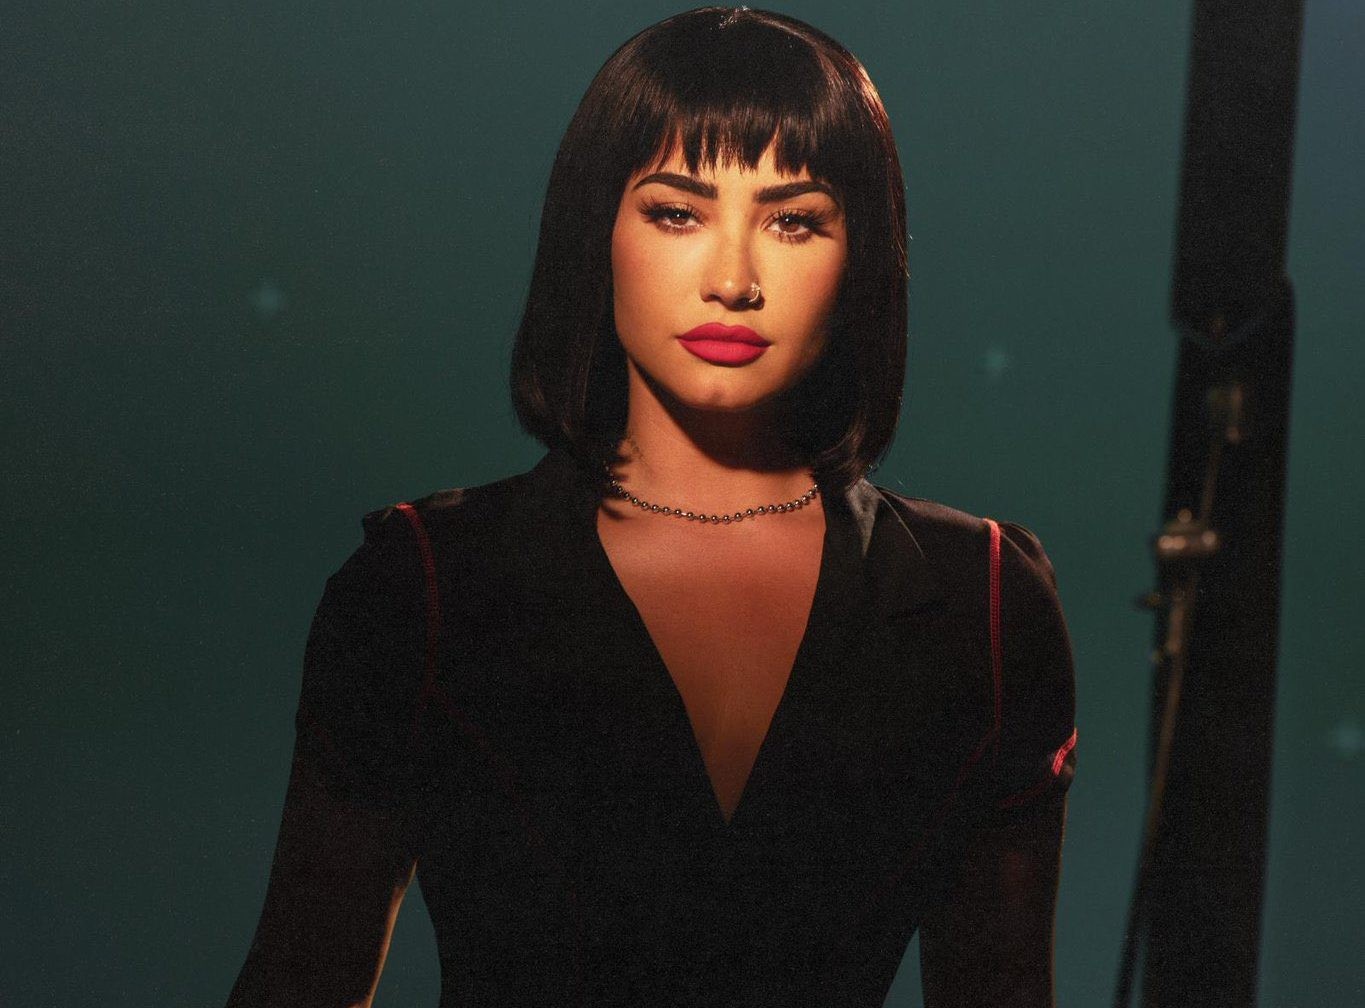 Demi Lovato volta ao rock em 'Holy Fvck', com letras sobre overdose e amigos mortos; g1 ouviu